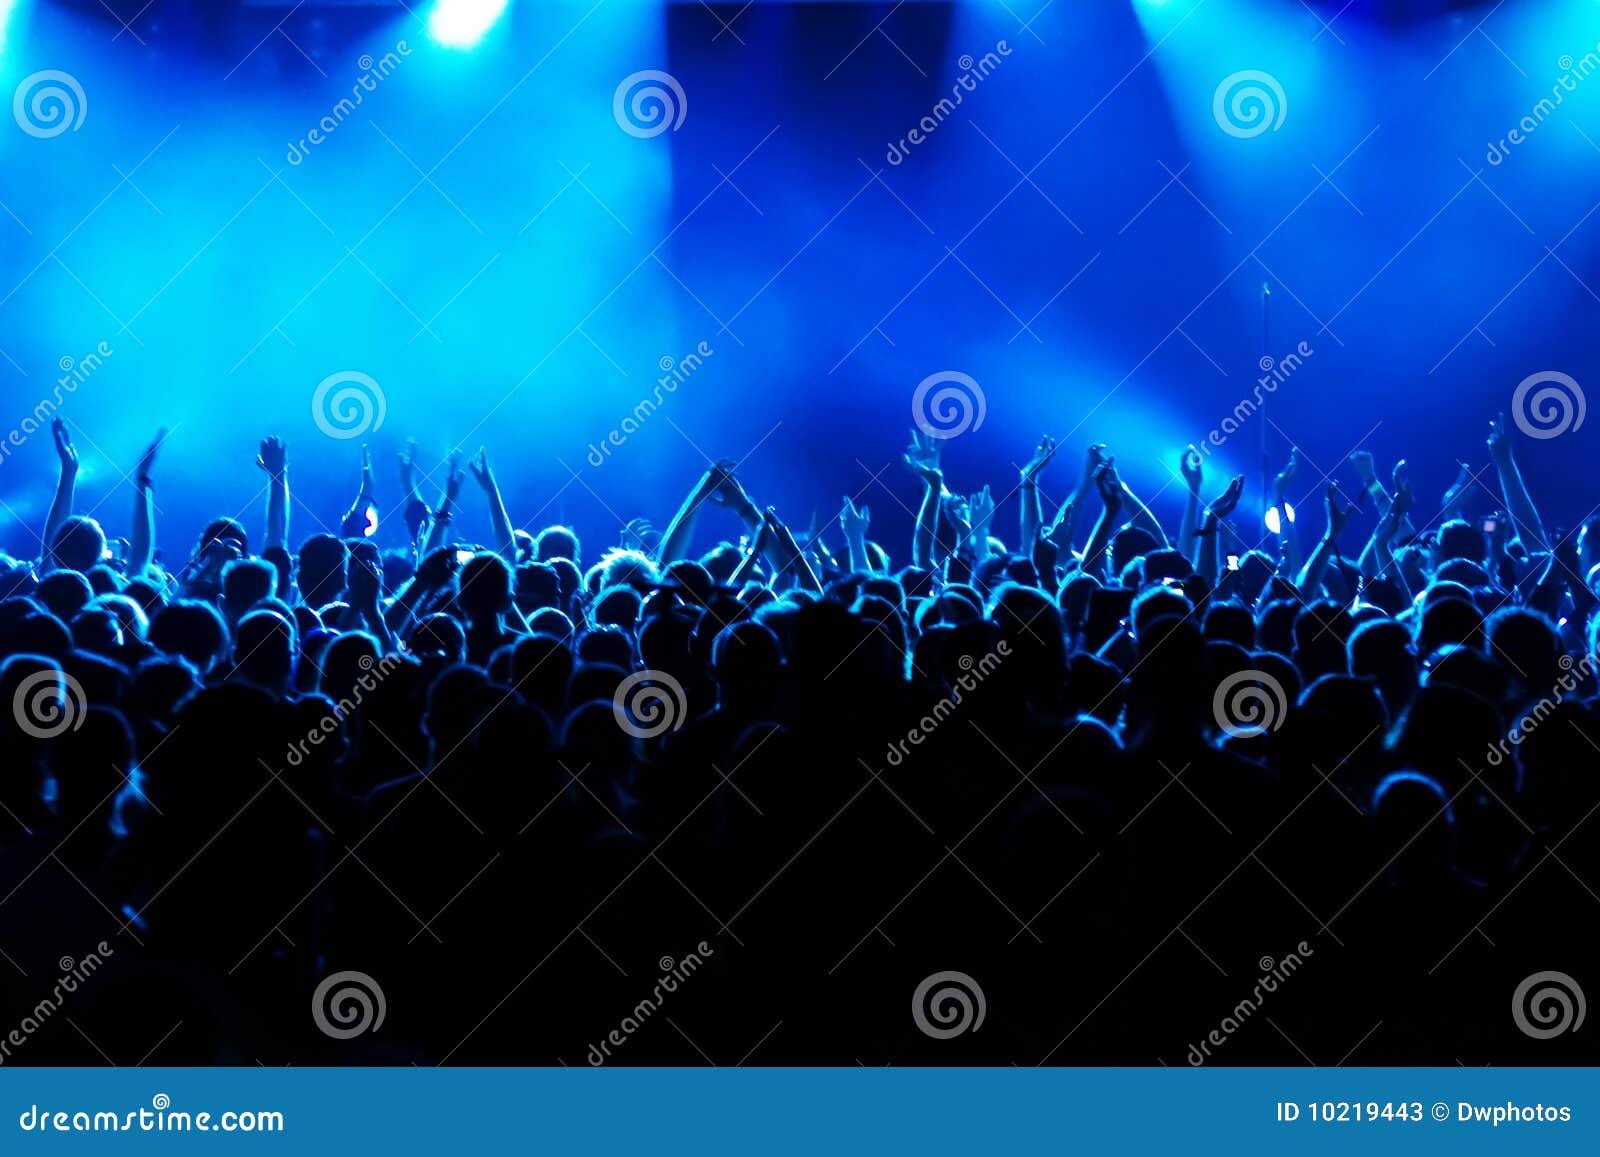 concert crowd